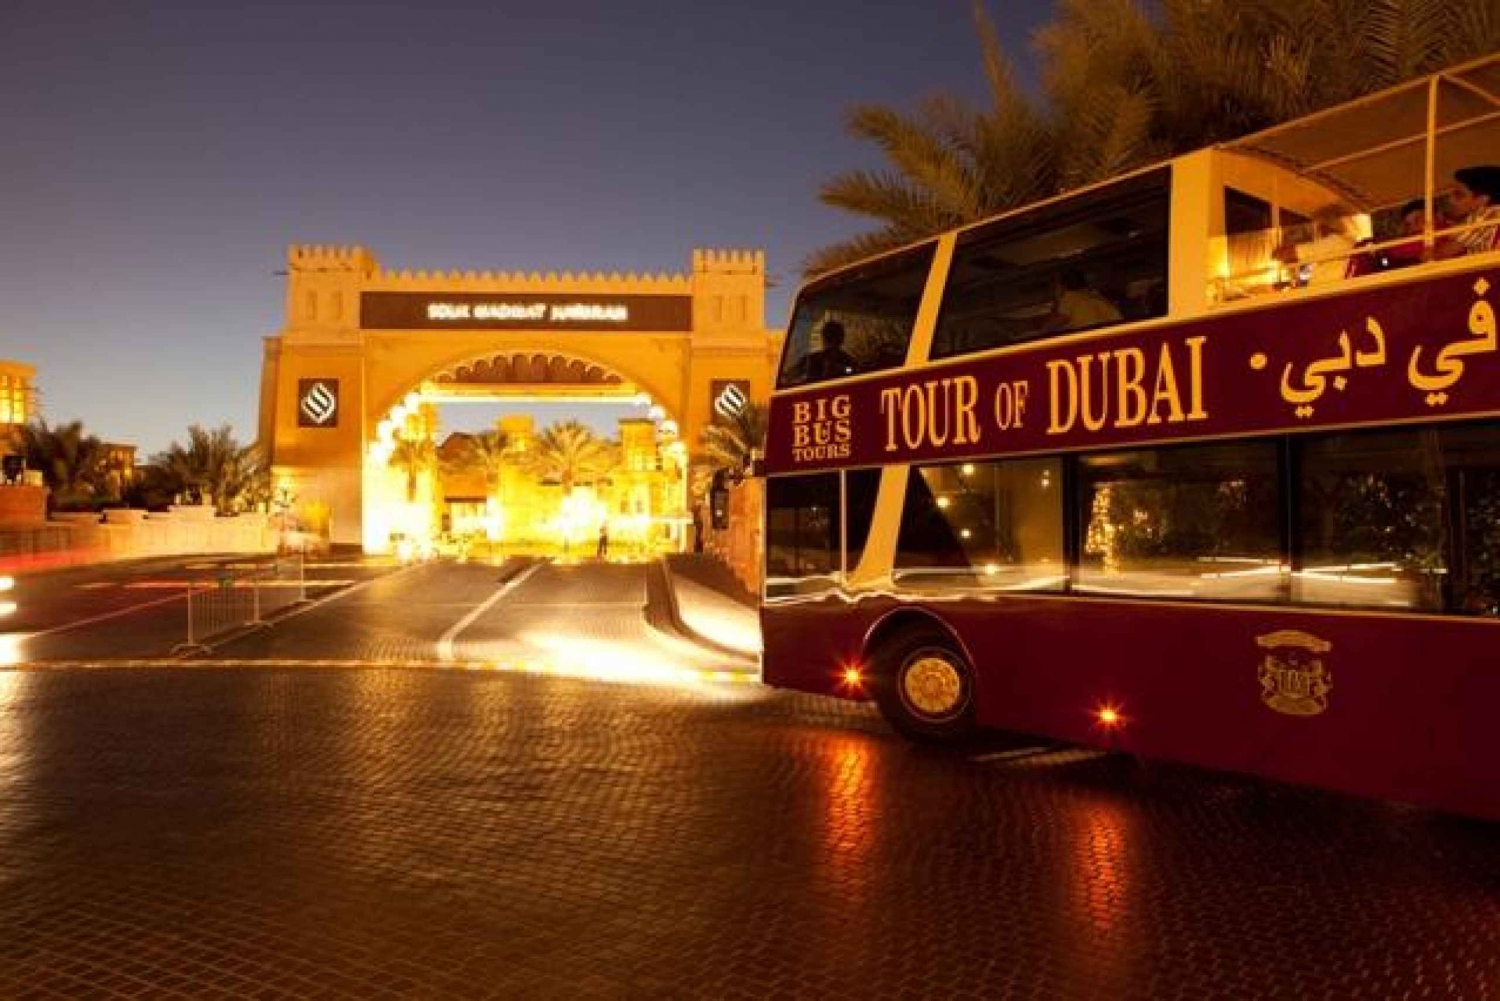 Dubai: Big Bus Panoramic Night Tour